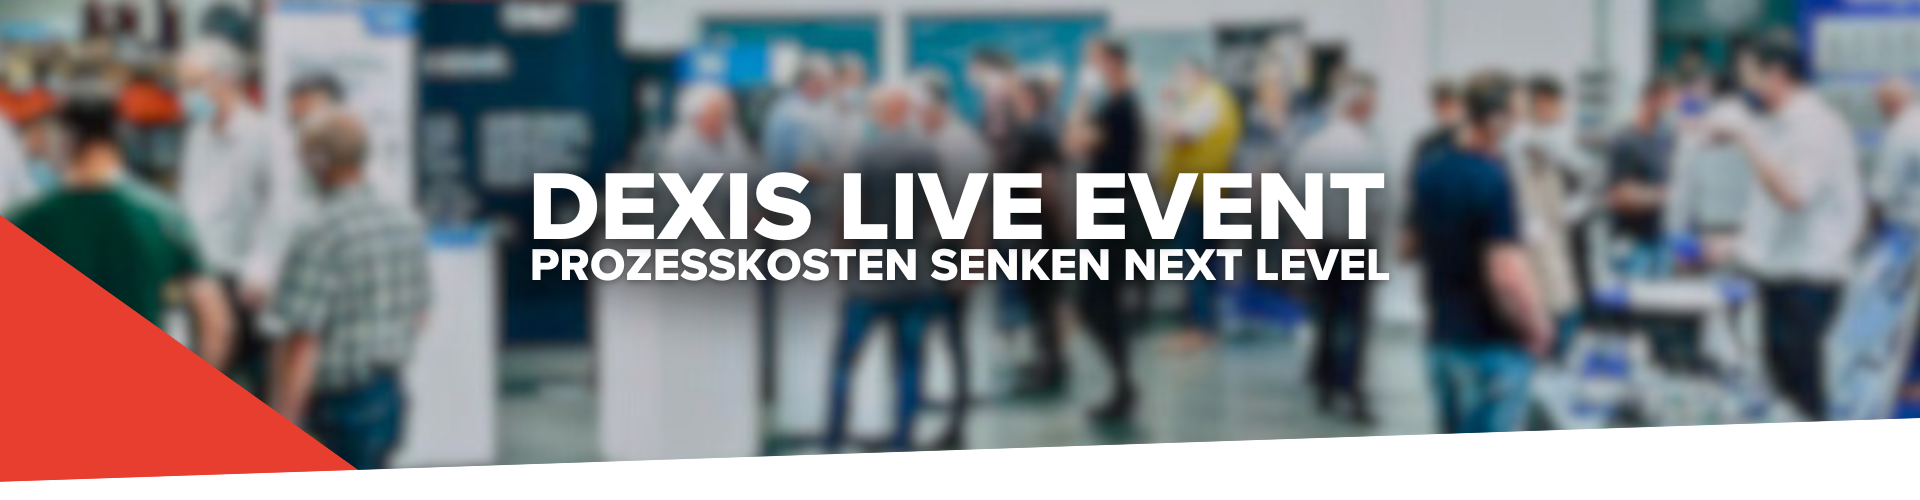 Rückblick: DEXIS Live Event - Prozesskosten senken next Level